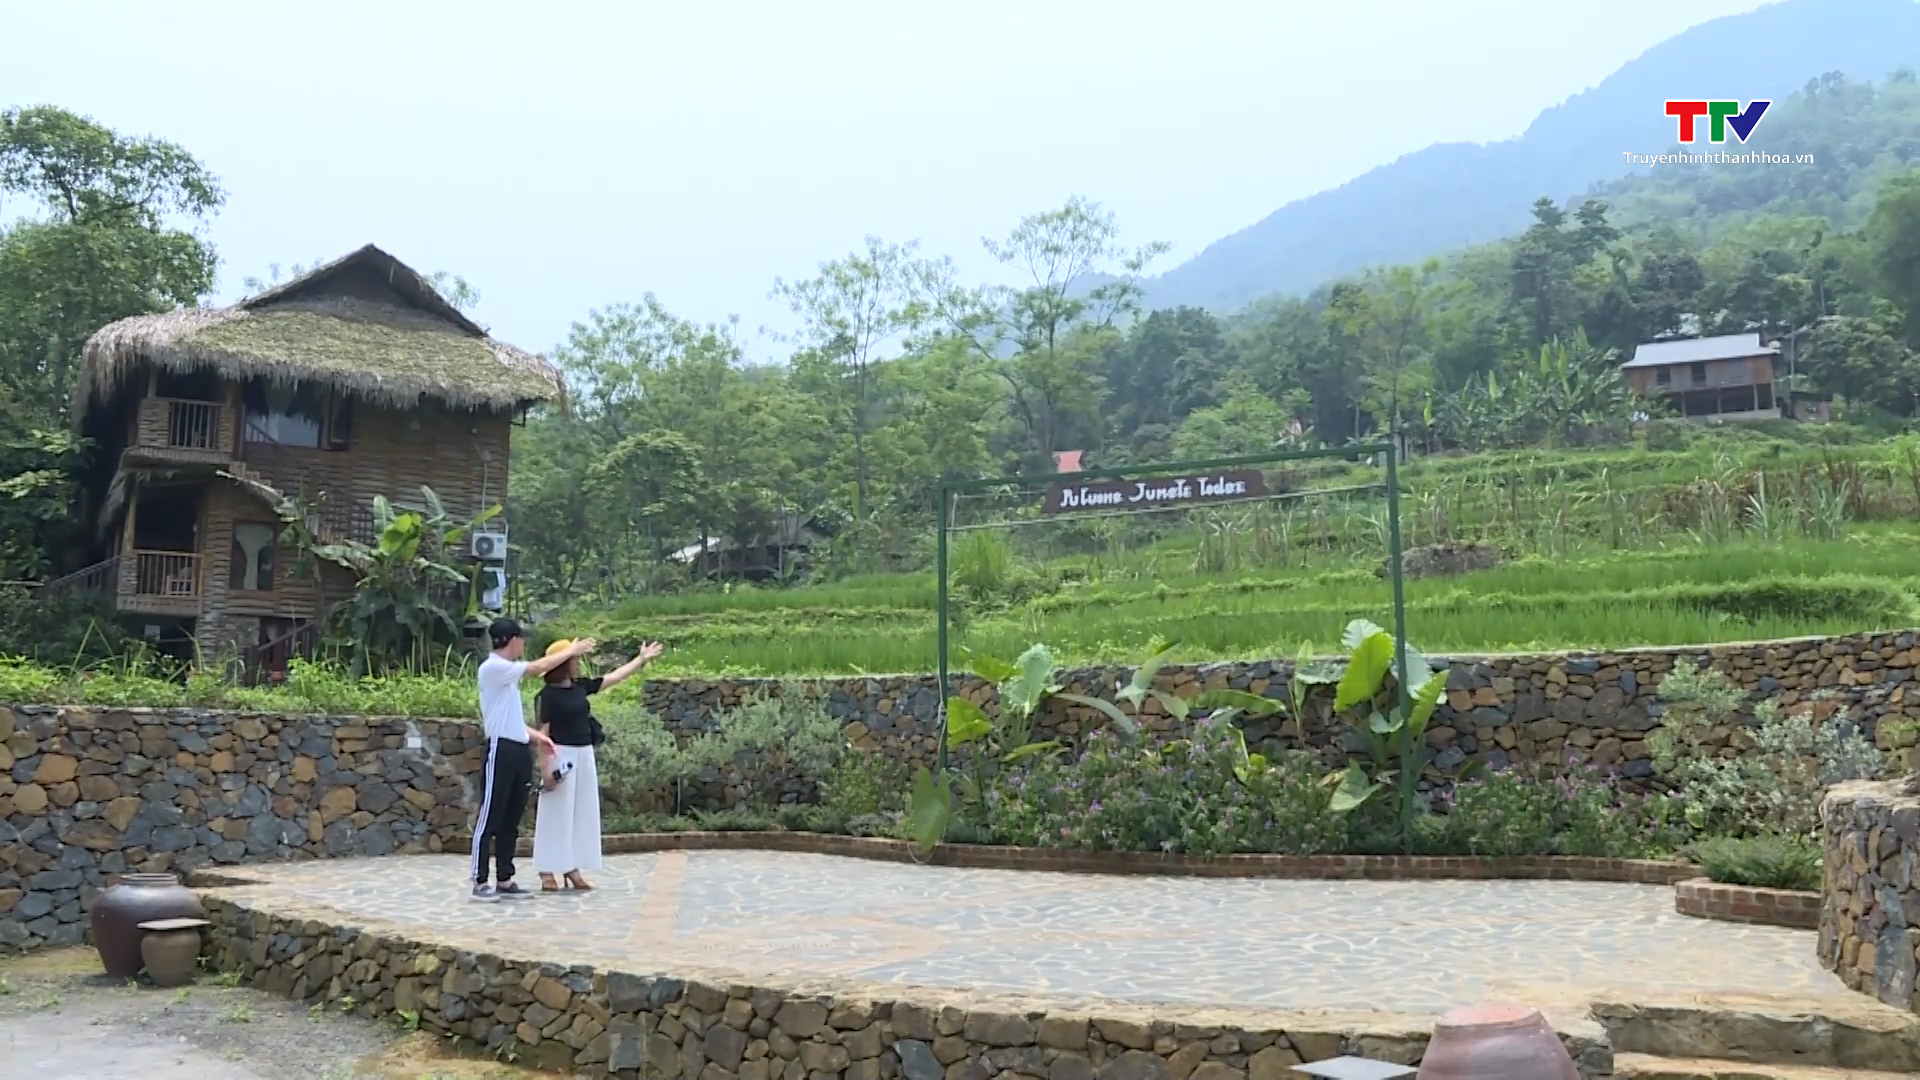 Các khu, điểm du lịch miền núi Thanh Hóa sẵn sàng đón khách du lịch trong dịp nghỉ lễ 30/4 và 1/5- Ảnh 6.